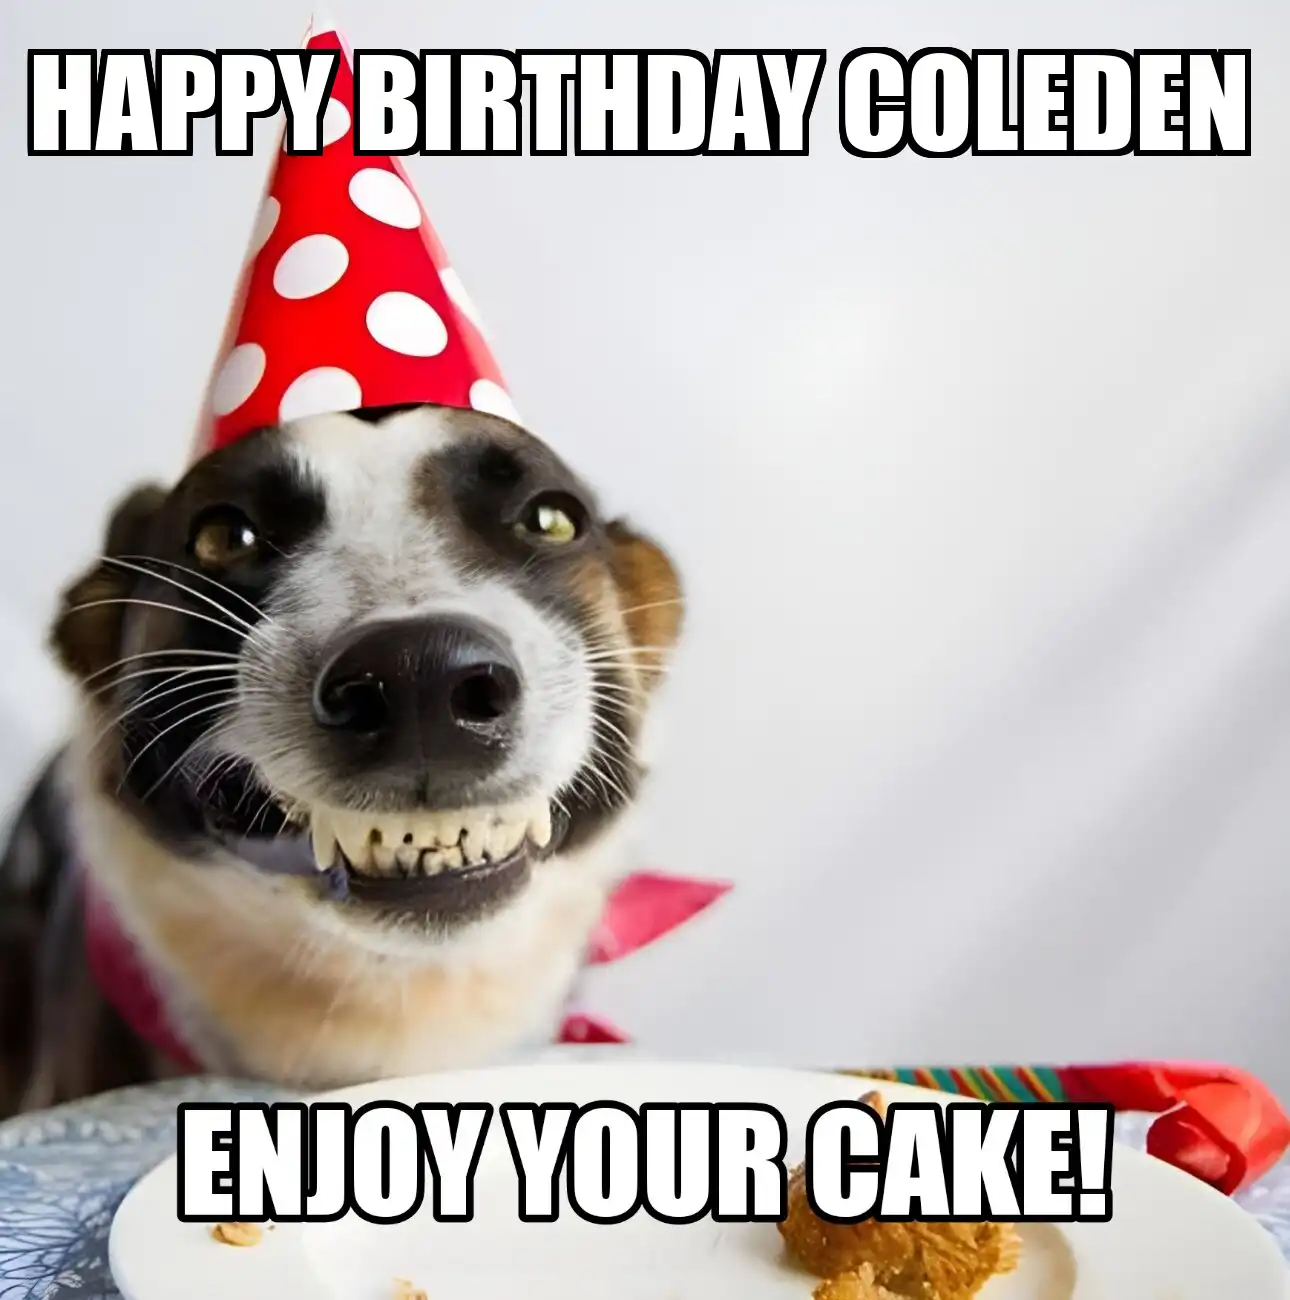 Happy Birthday Coleden Enjoy Your Cake Dog Meme